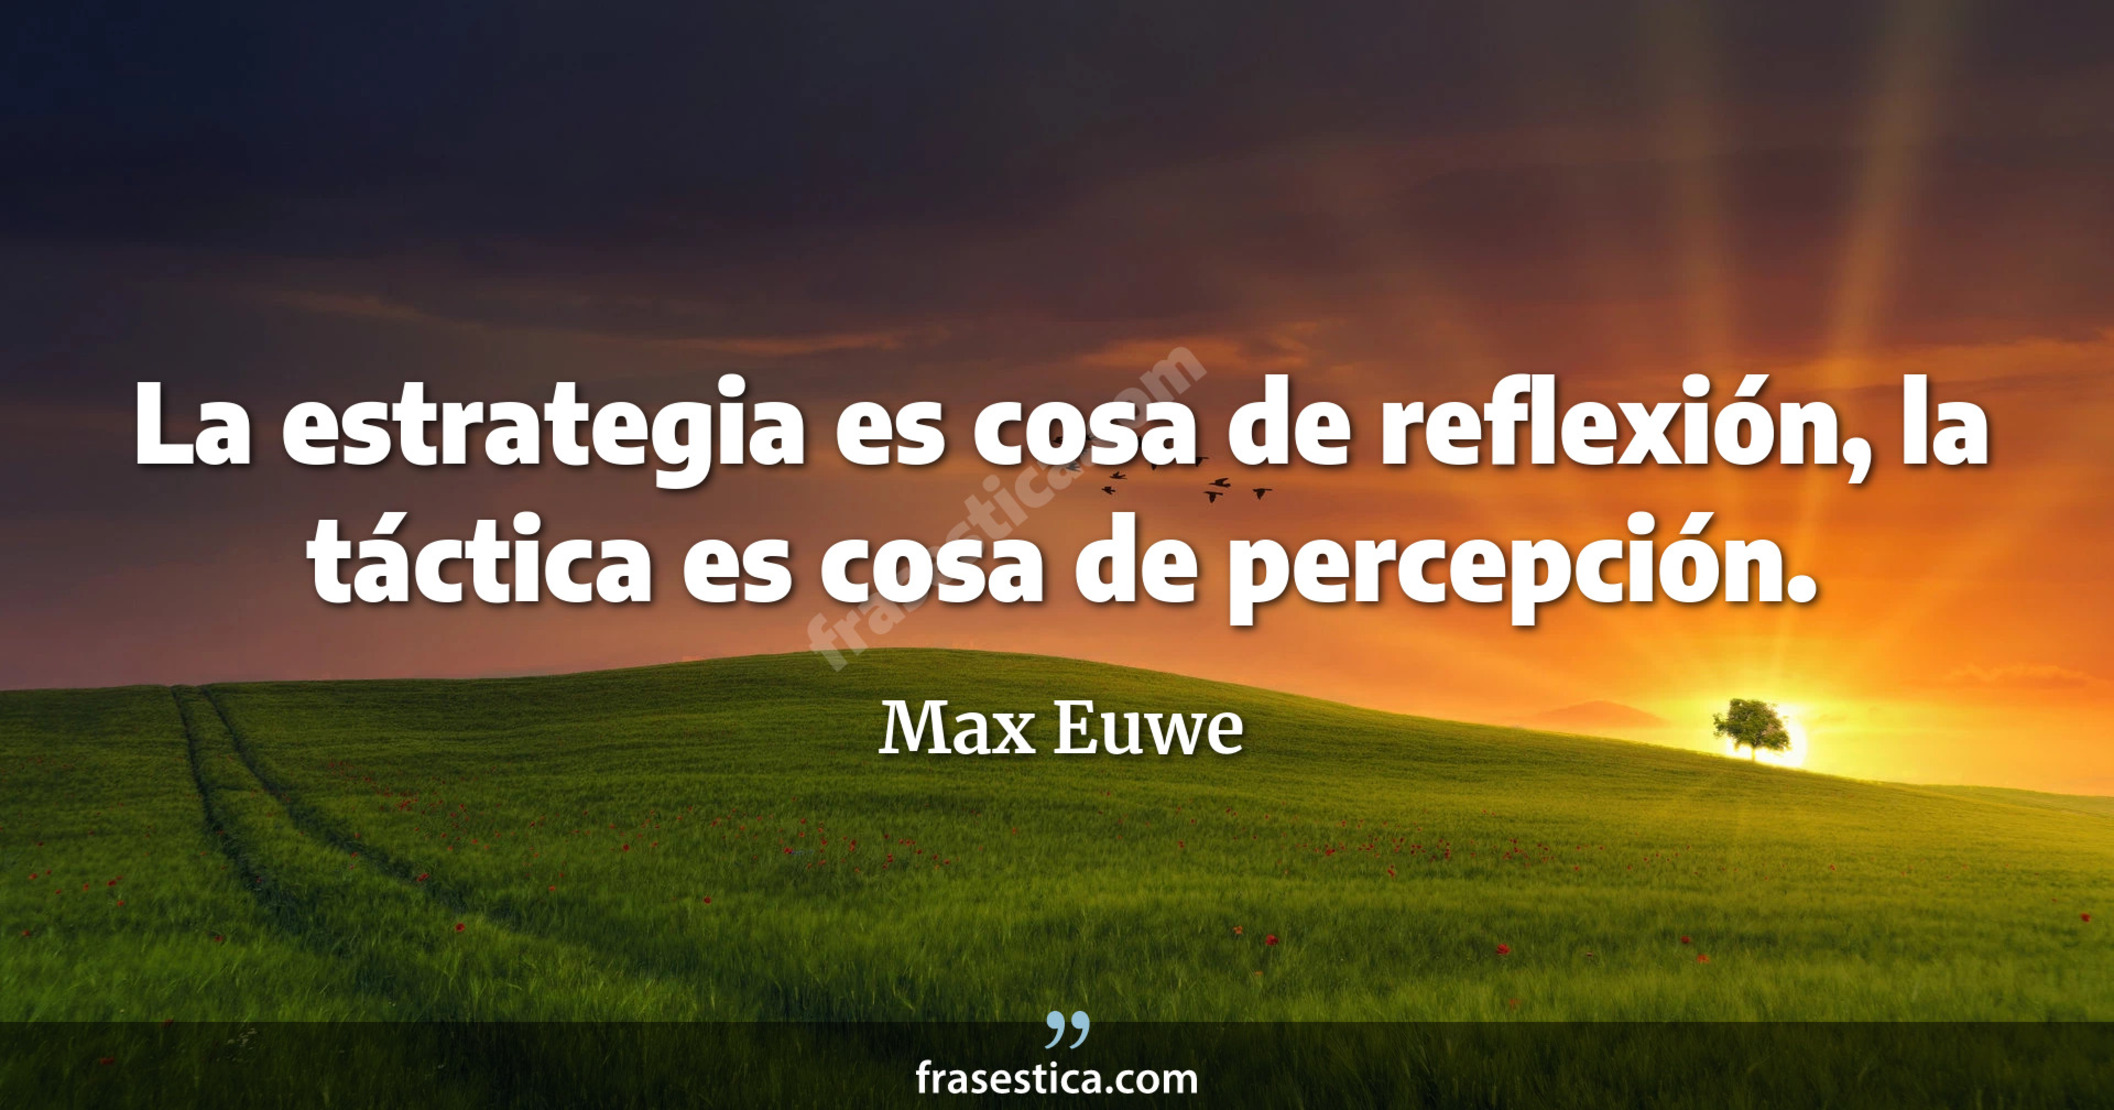 La estrategia es cosa de reflexión, la táctica es cosa de percepción. - Max Euwe